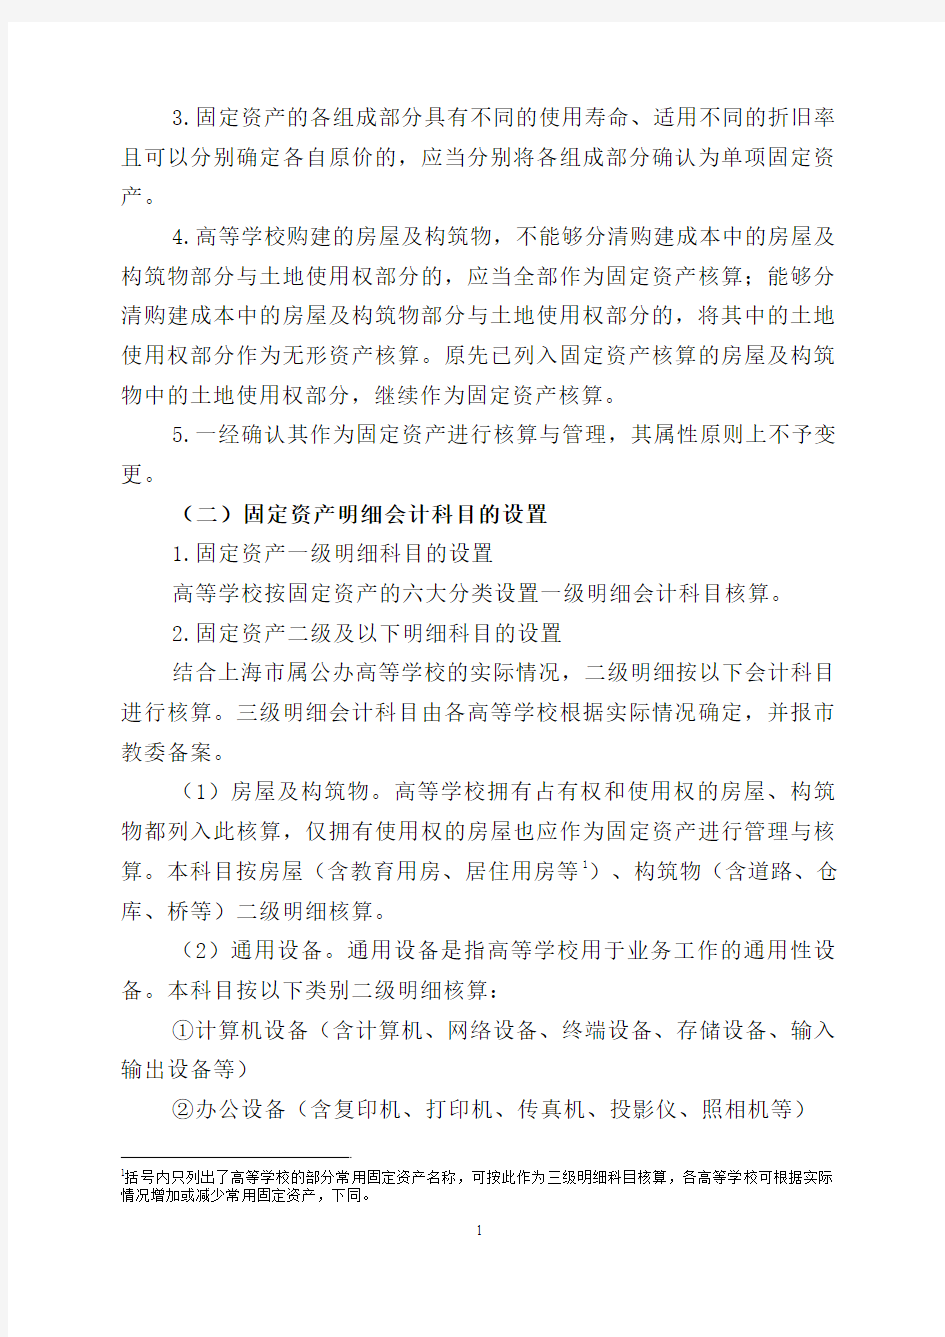 上海市地方公办高等学校固定资产和无形资产核算操作细则